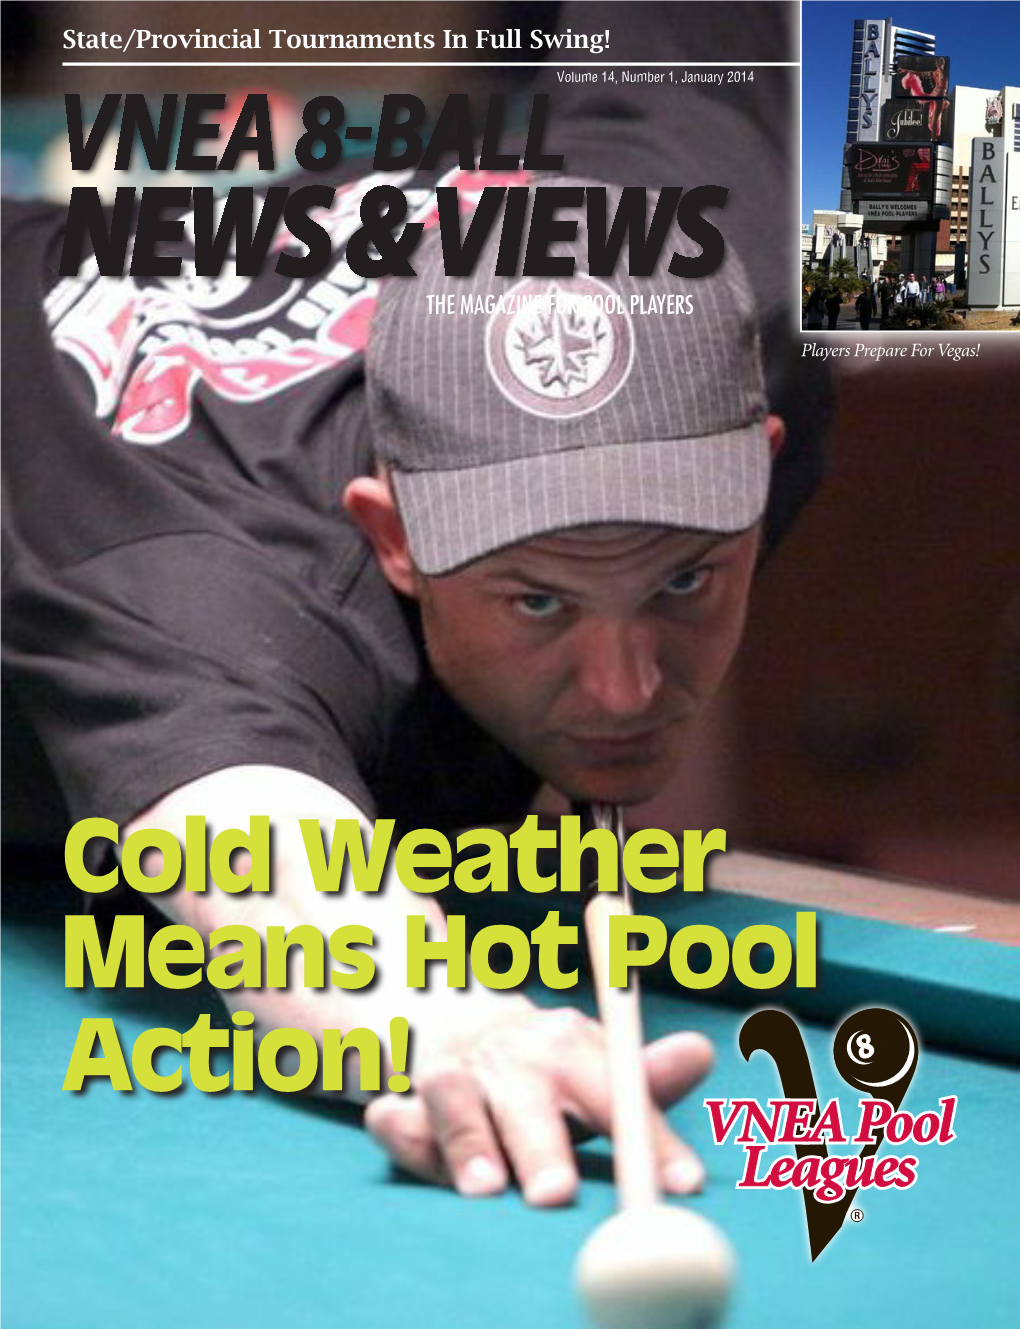 Vnea 8-Ball News & Views the Magazine for Pool Players